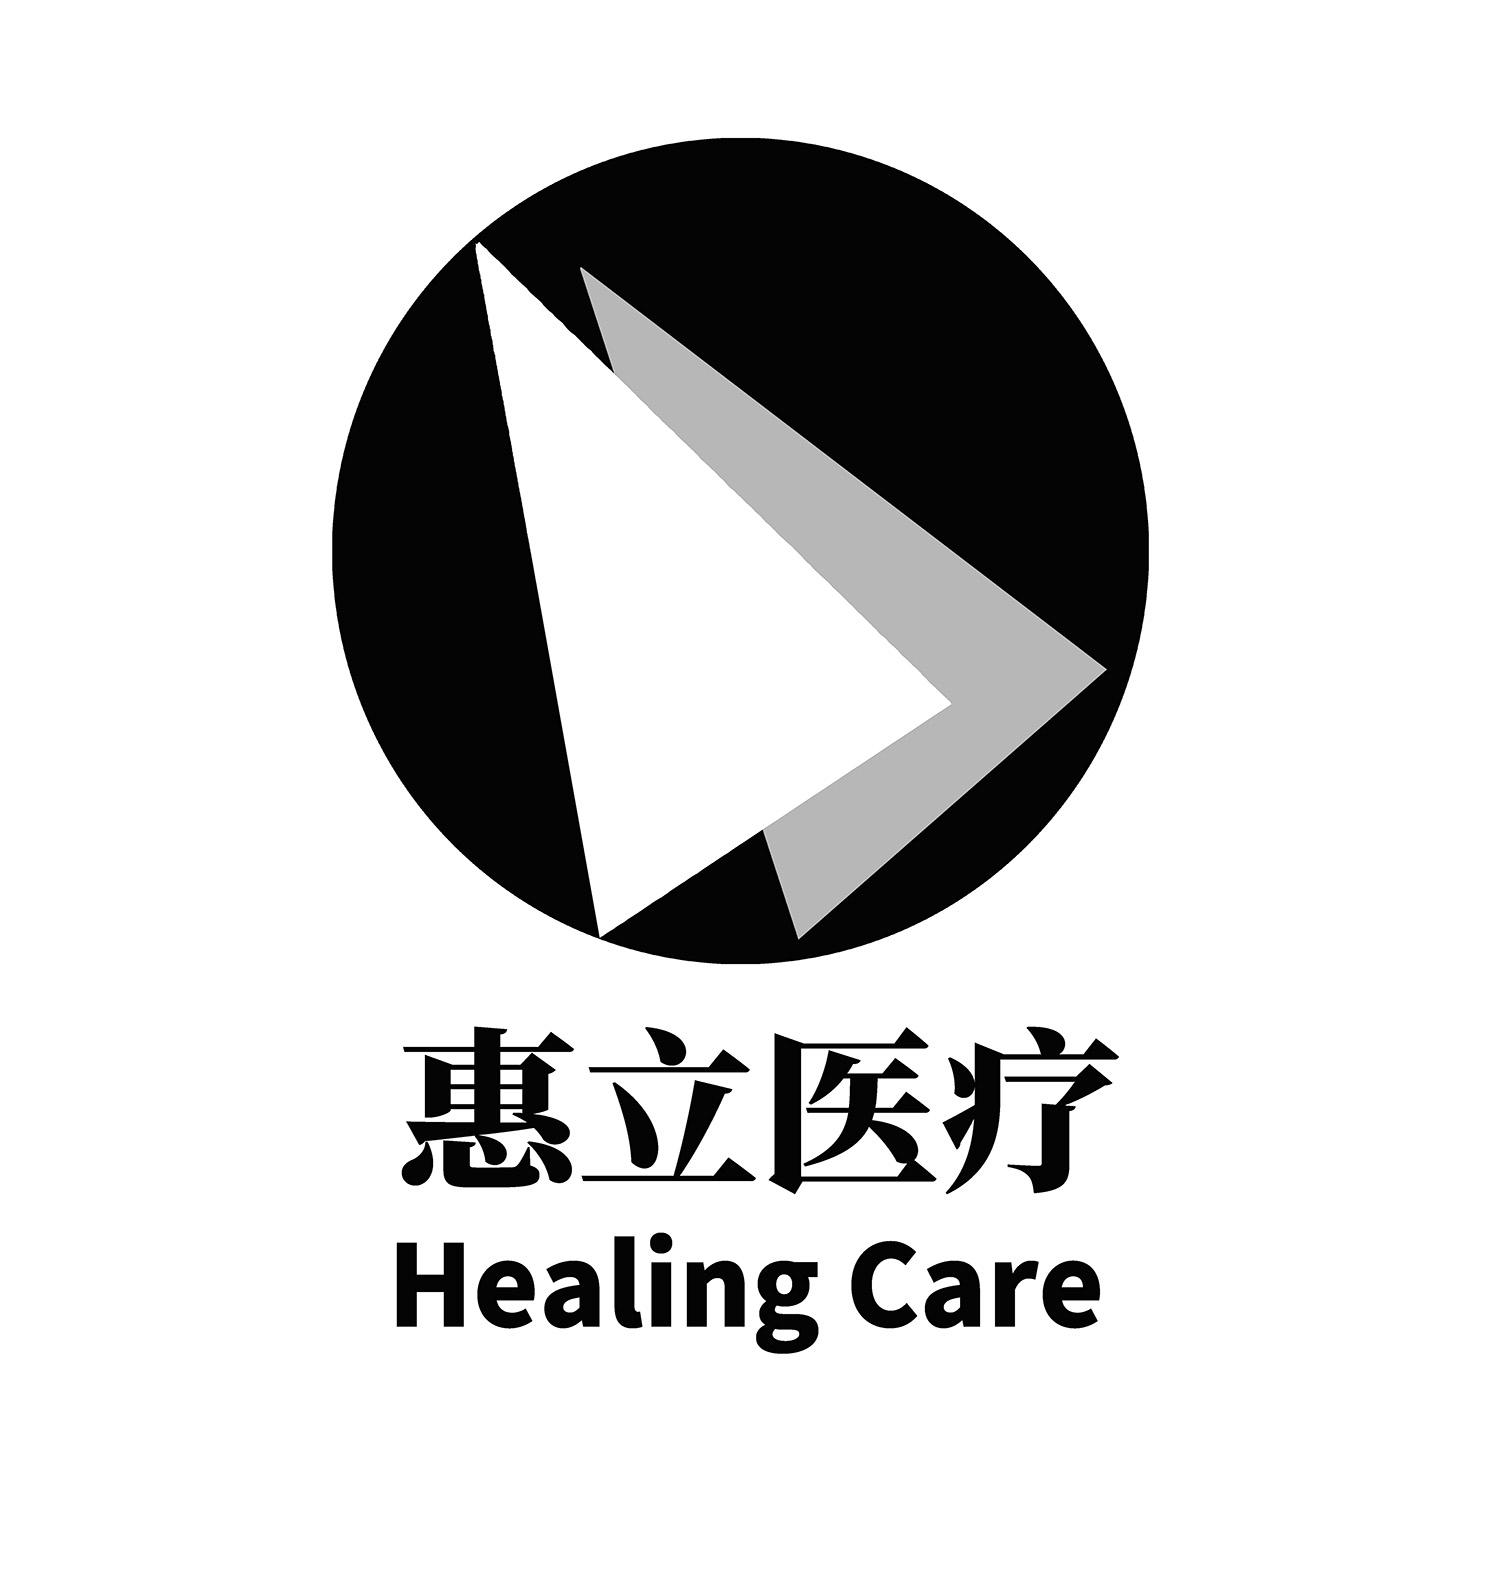 商标文字惠立医疗 healing care商标注册号 43951273,商标申请人上海